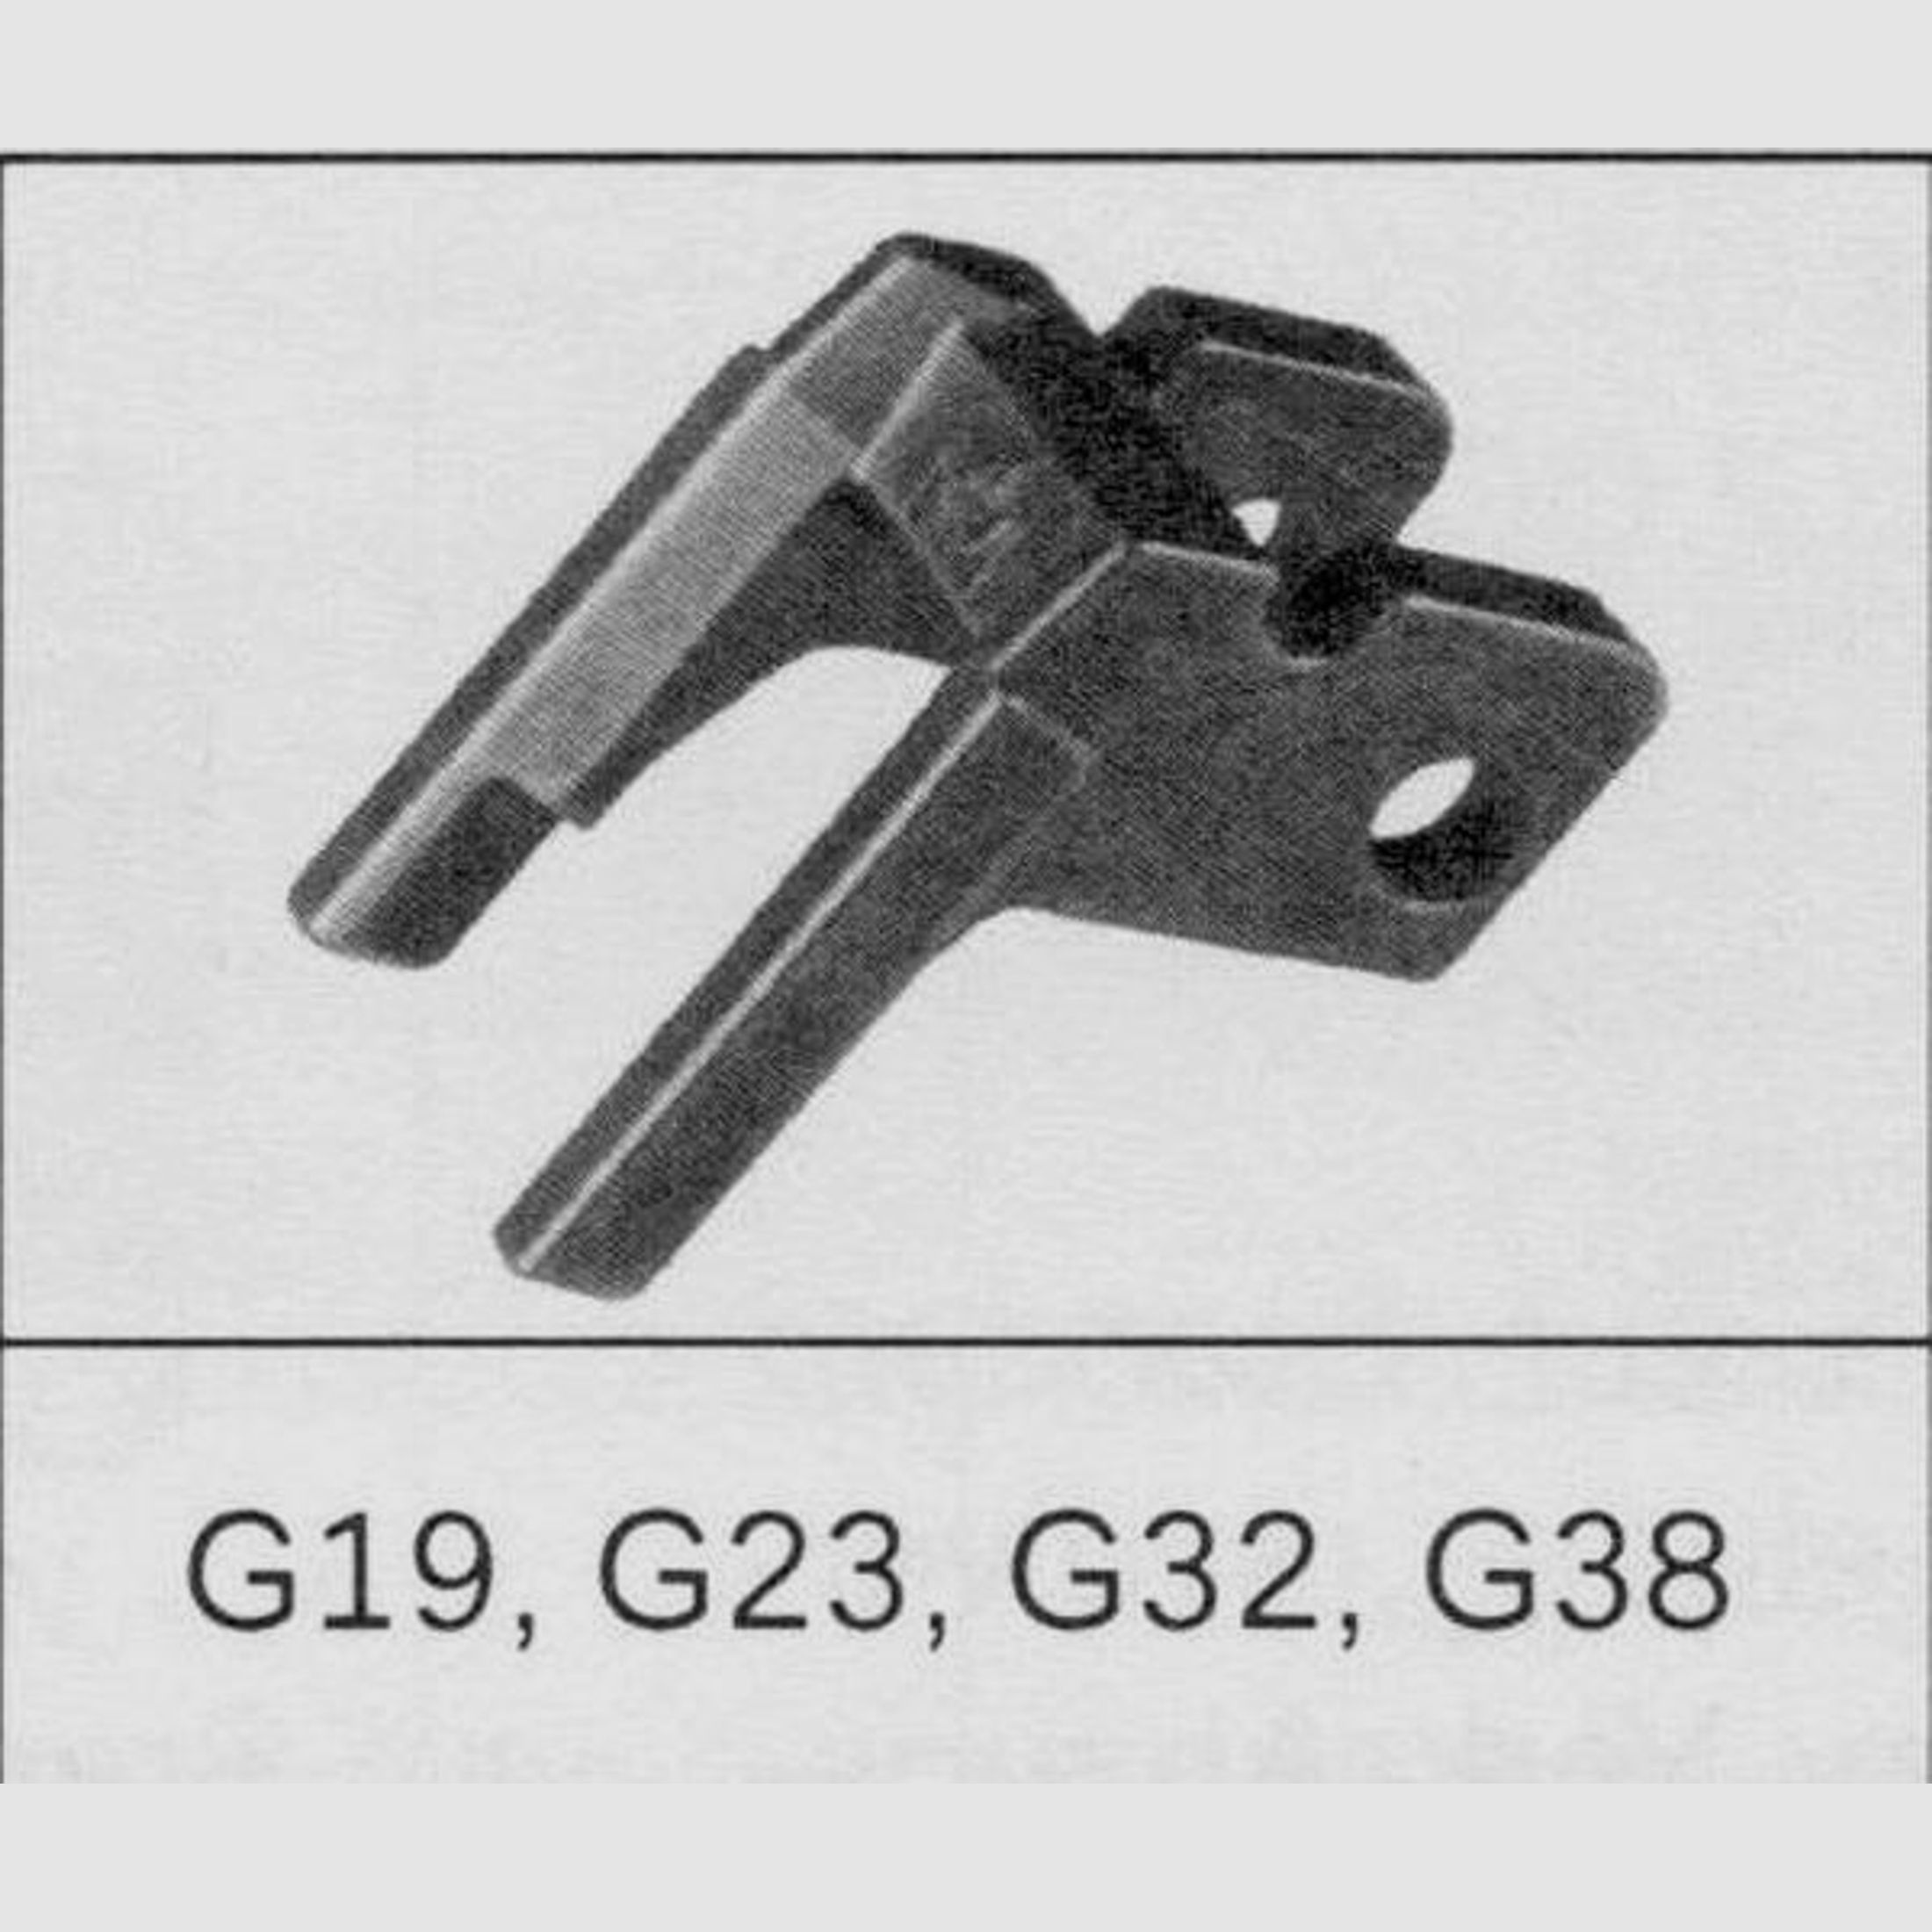 GLOCK Tuning/Ersatzteil f. Pistole Verriegelungsblock #22 Gen3 f. 19,23,25,32,38